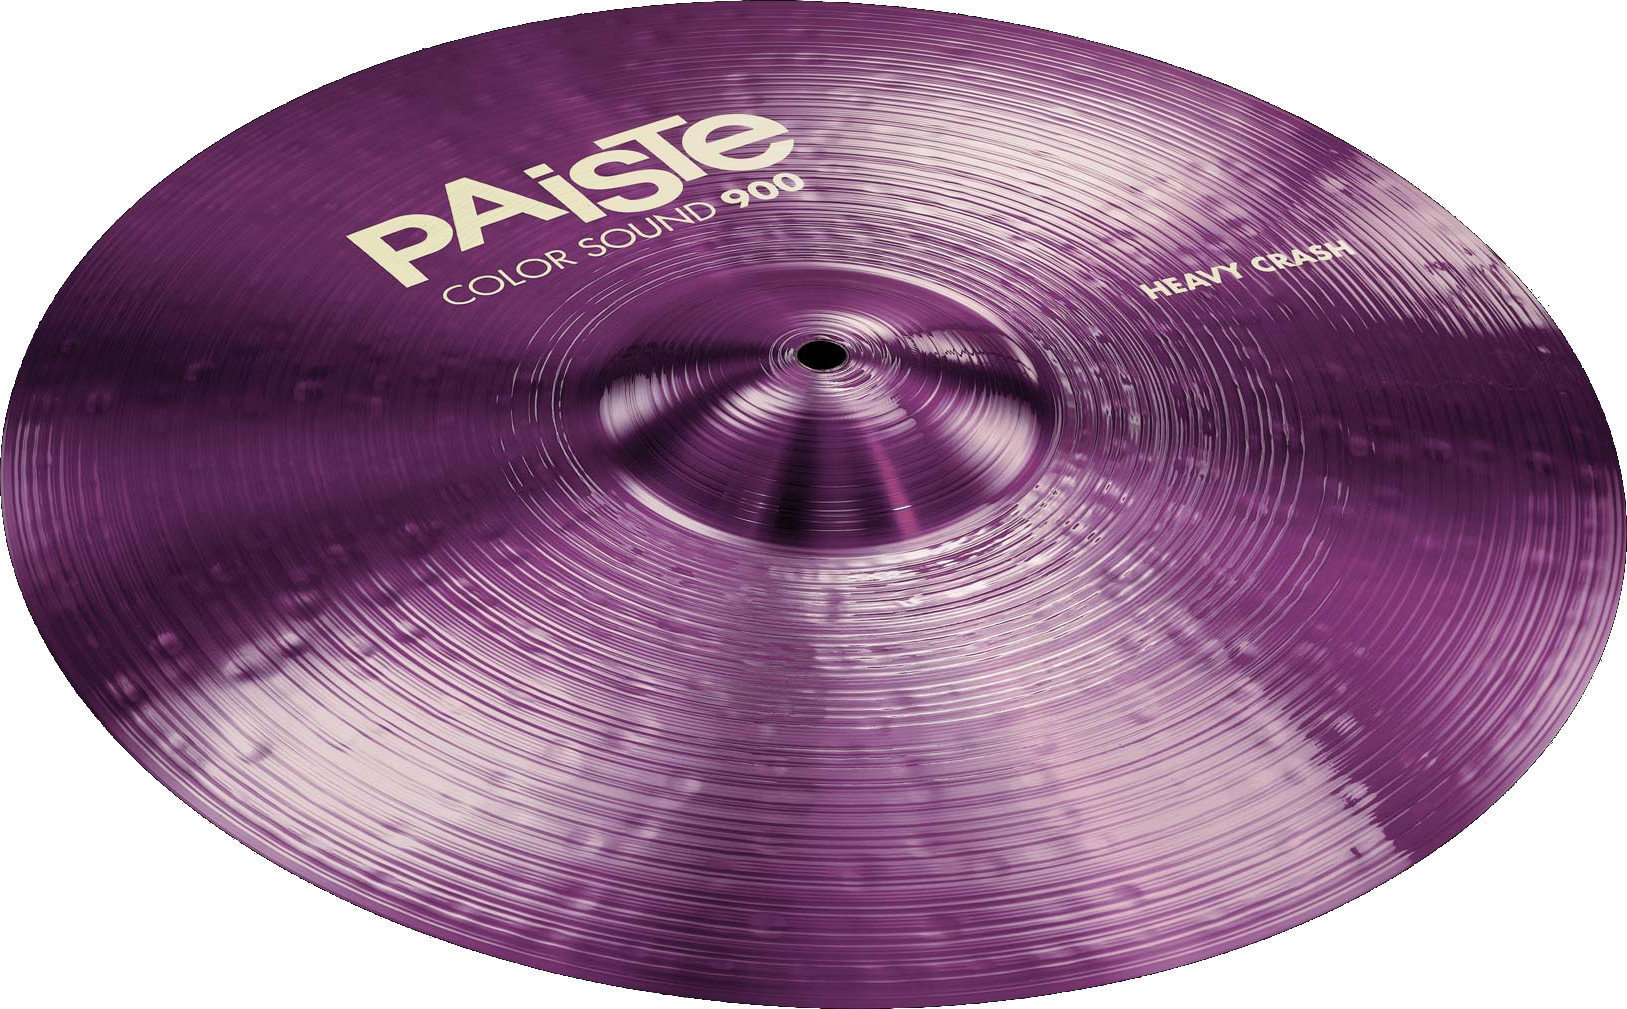 Crash Cymbal Paiste Color Sound 900  Heavy Crash Cymbal 19" Violet